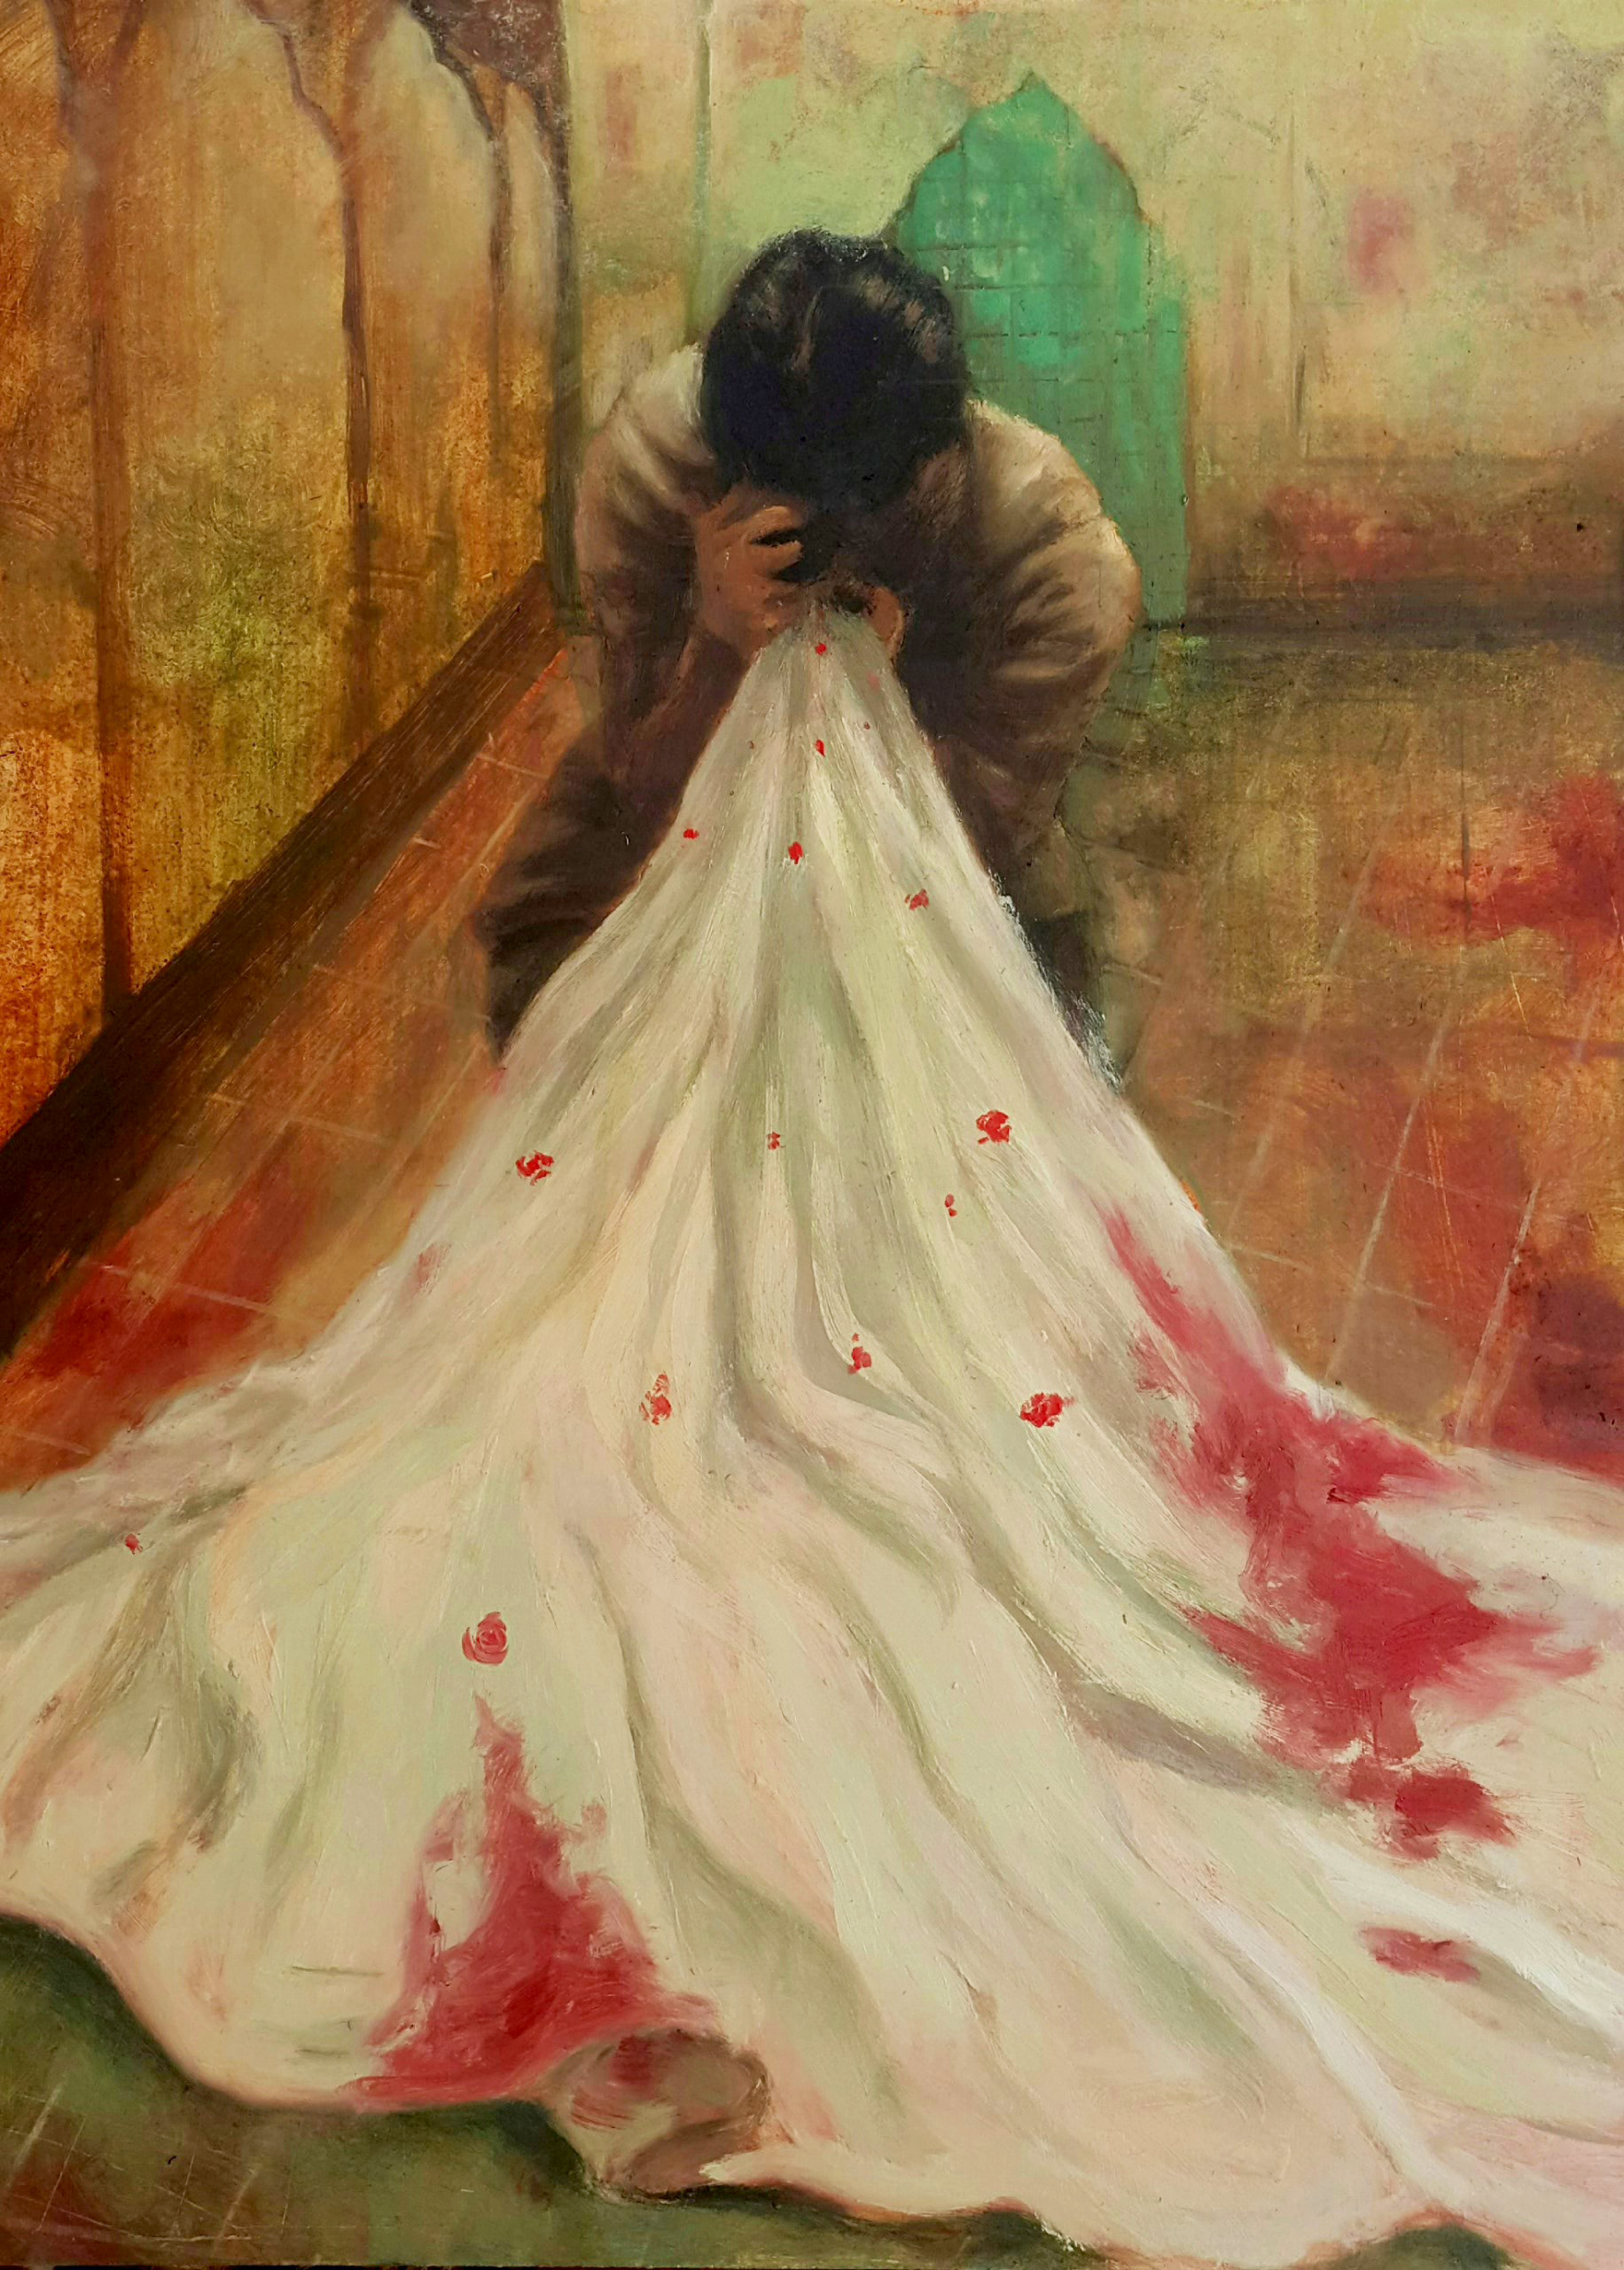 های چادر خونین توست صبح امید نقاش: هانیه دوامی